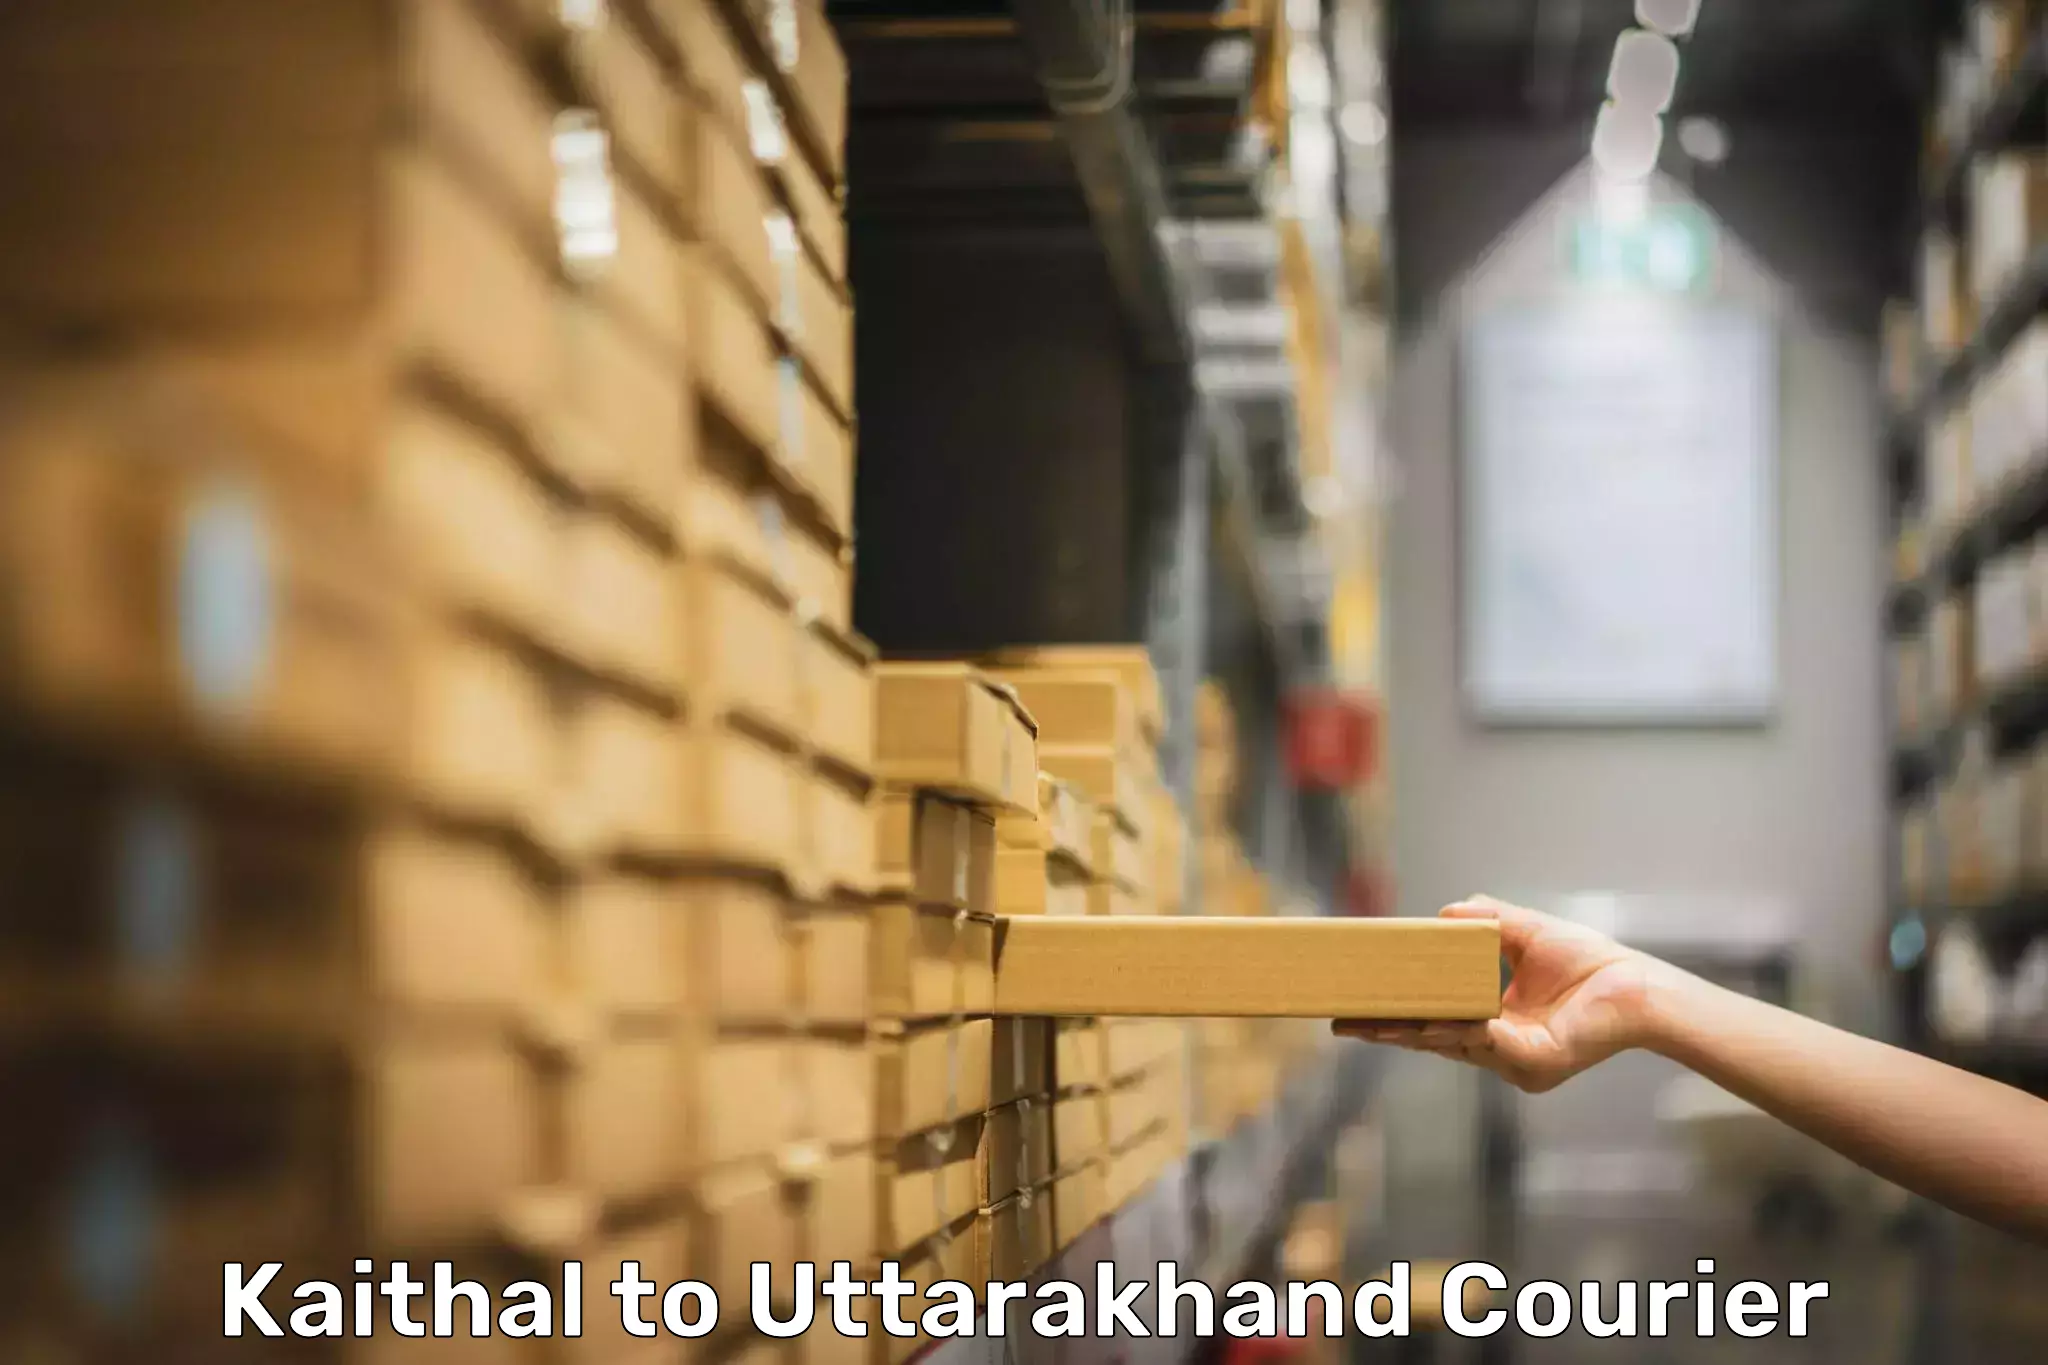 Luggage shipment specialists Kaithal to Uttarakhand